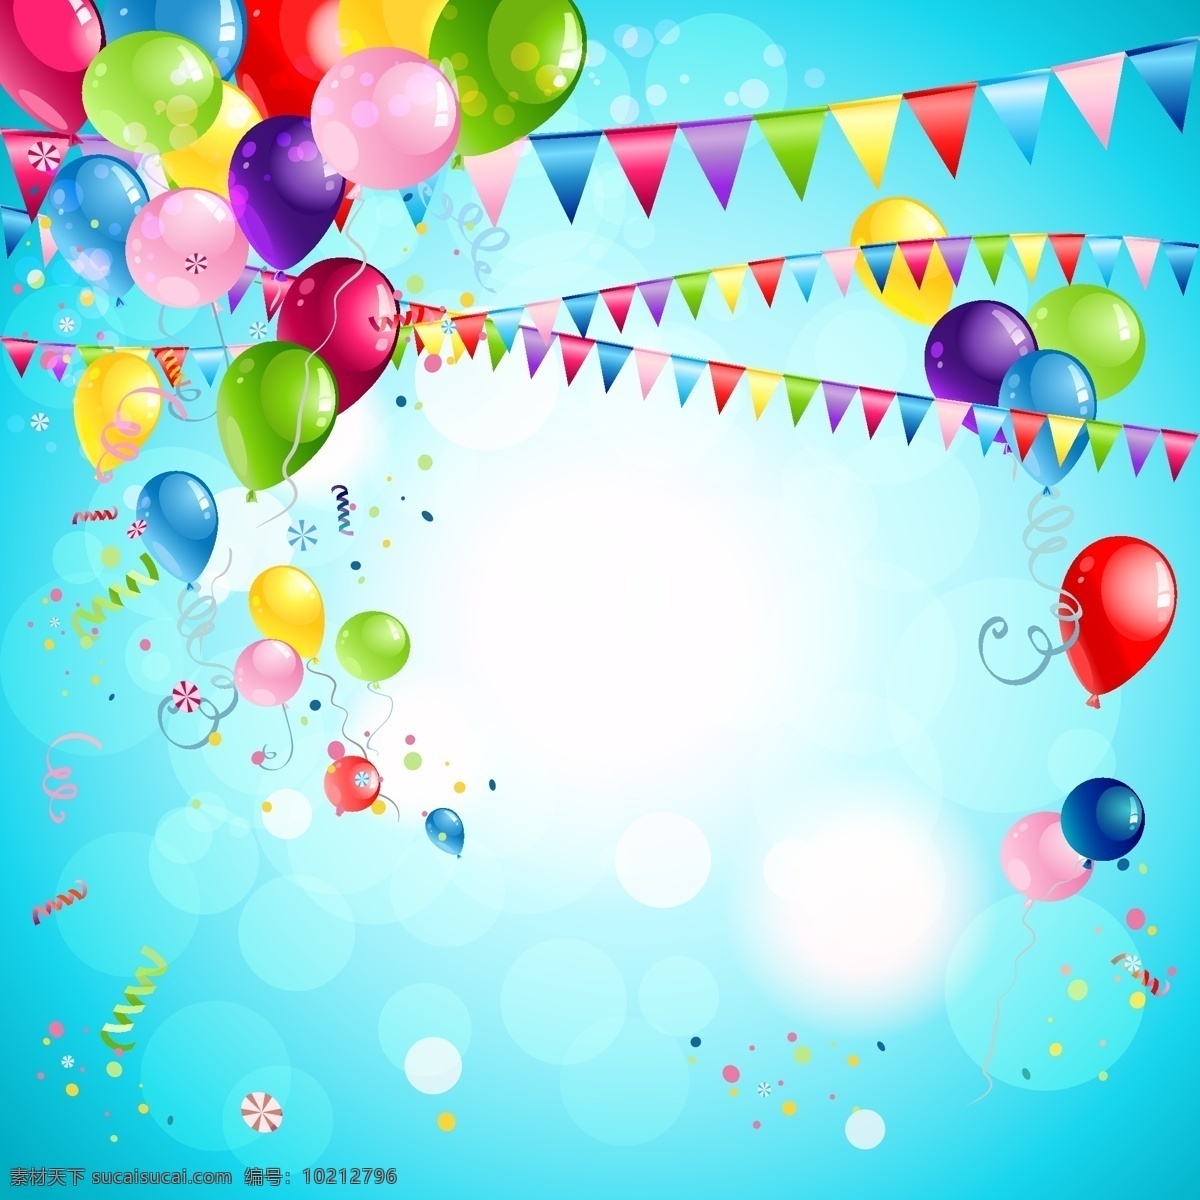 彩色 气球 拉 旗 节日 彩色纸屑 三角拉旗 生日快乐 矢量图 矢量 高清图片